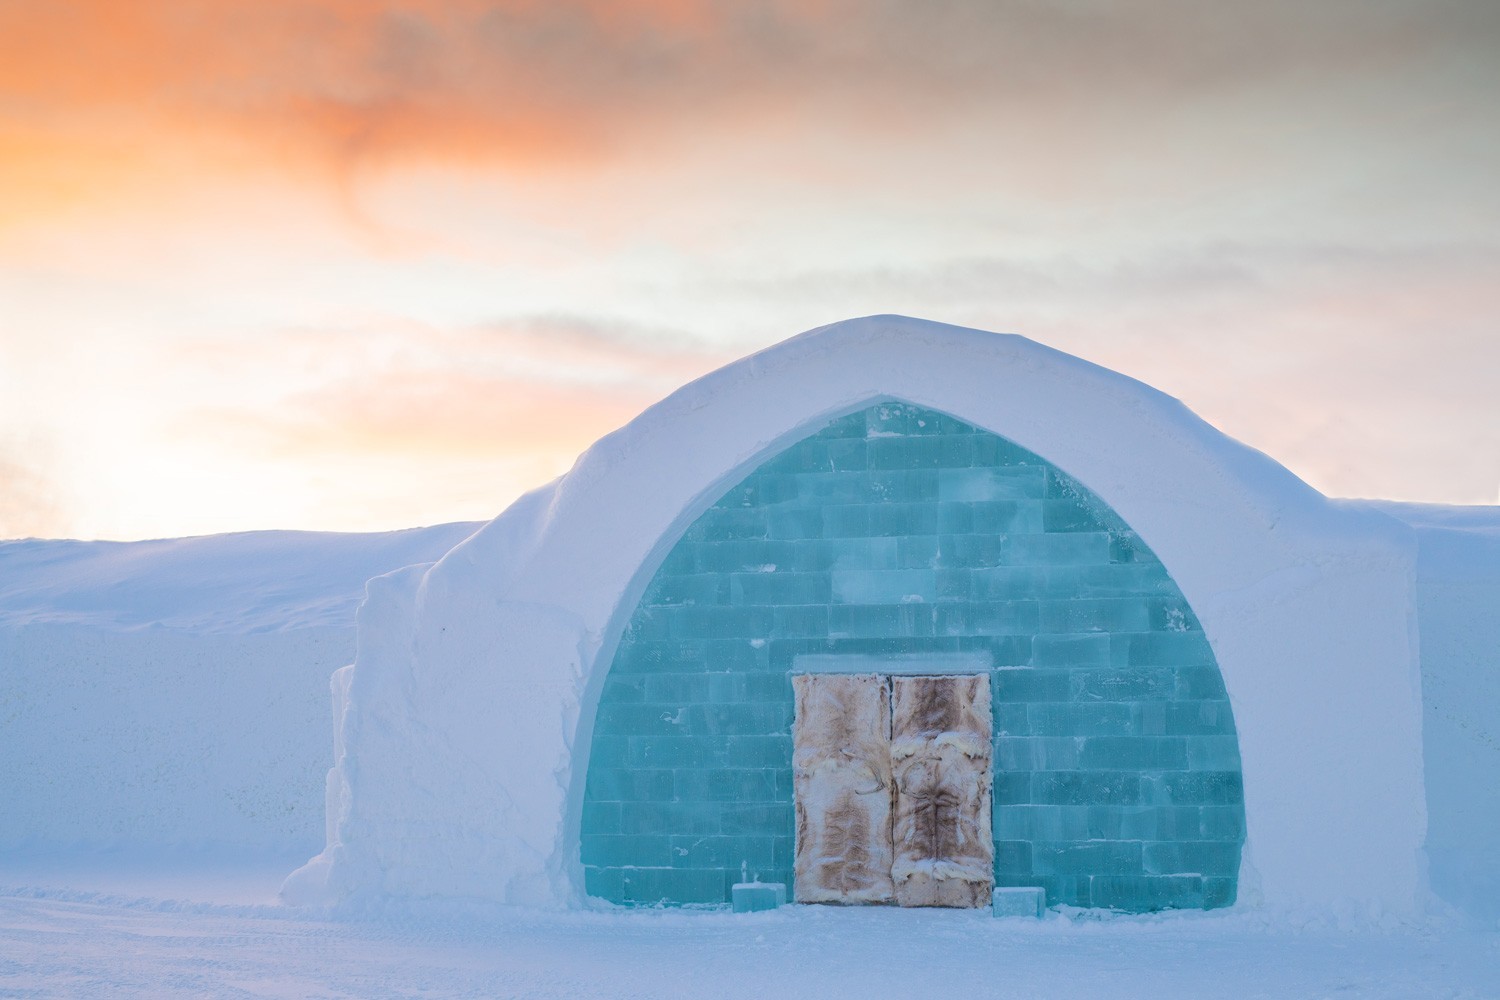 Entrée du 33e Ice Hotel à Jukkasjärvi, en Suède. Cette année encore, de nombreux artistes ont réalisé de magnifiques scultpures de glace éphémères.